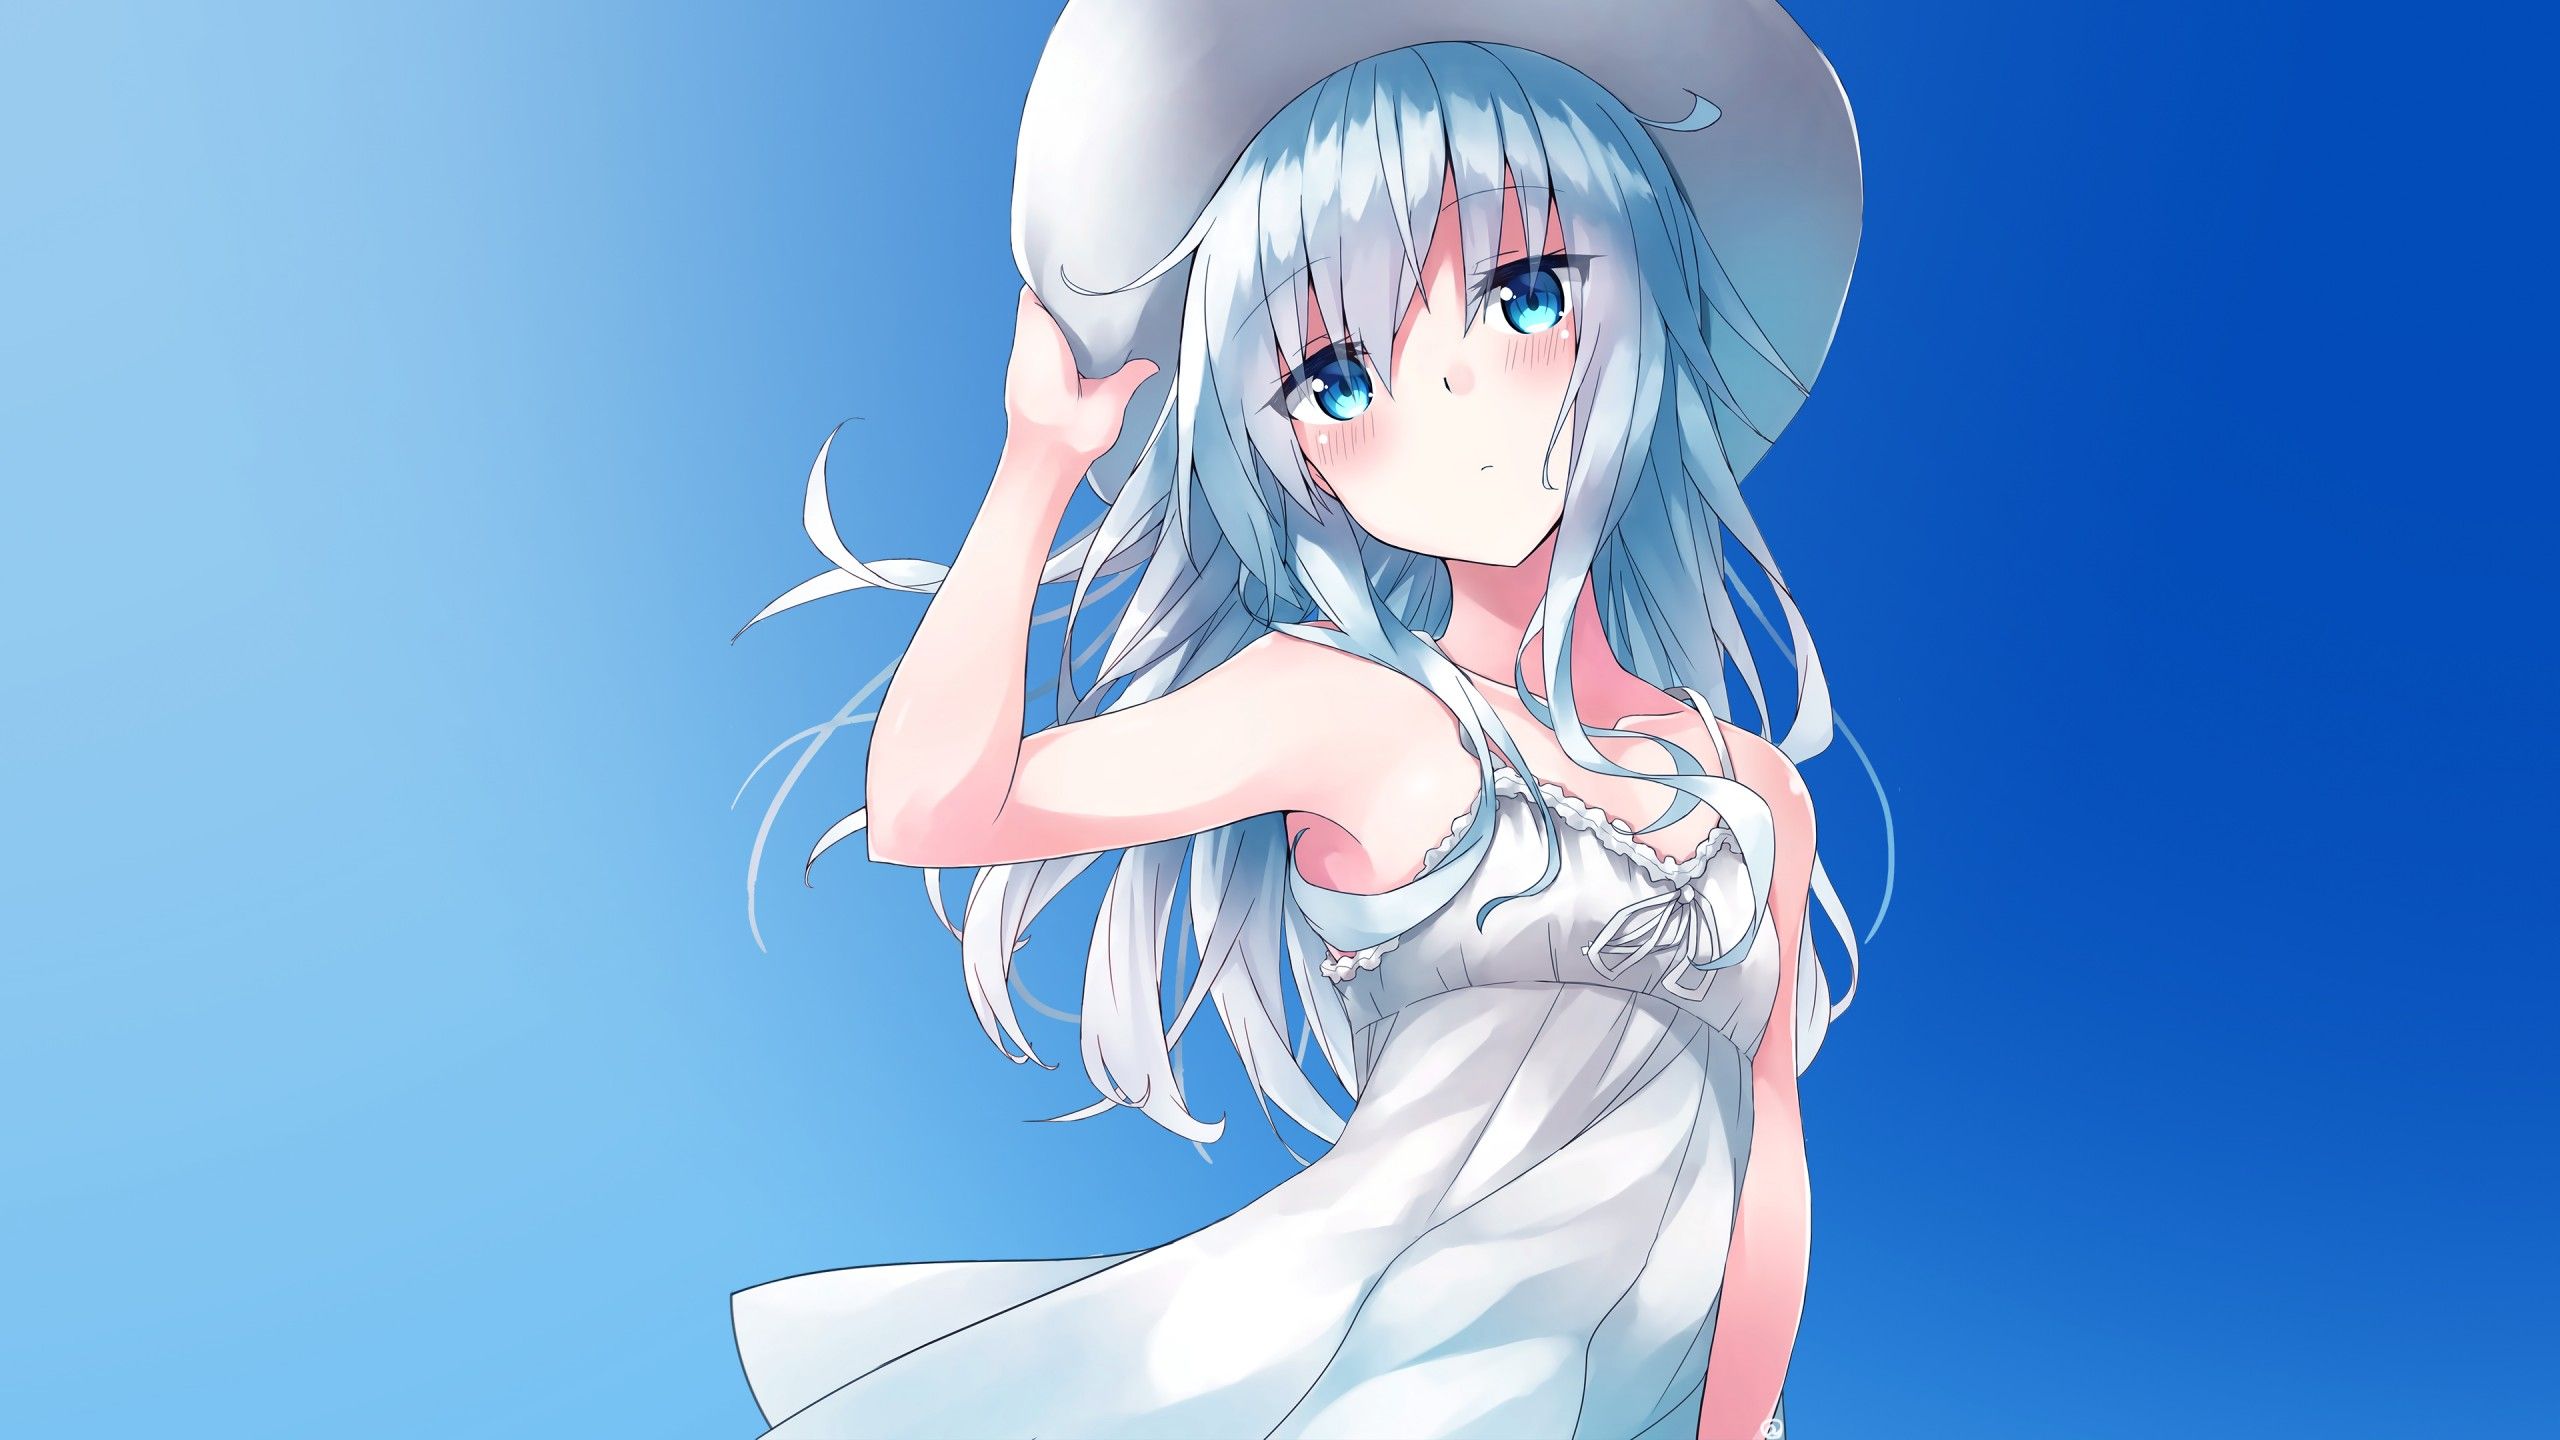 Wallpaper Anime girl, Summer, 4K, Anime